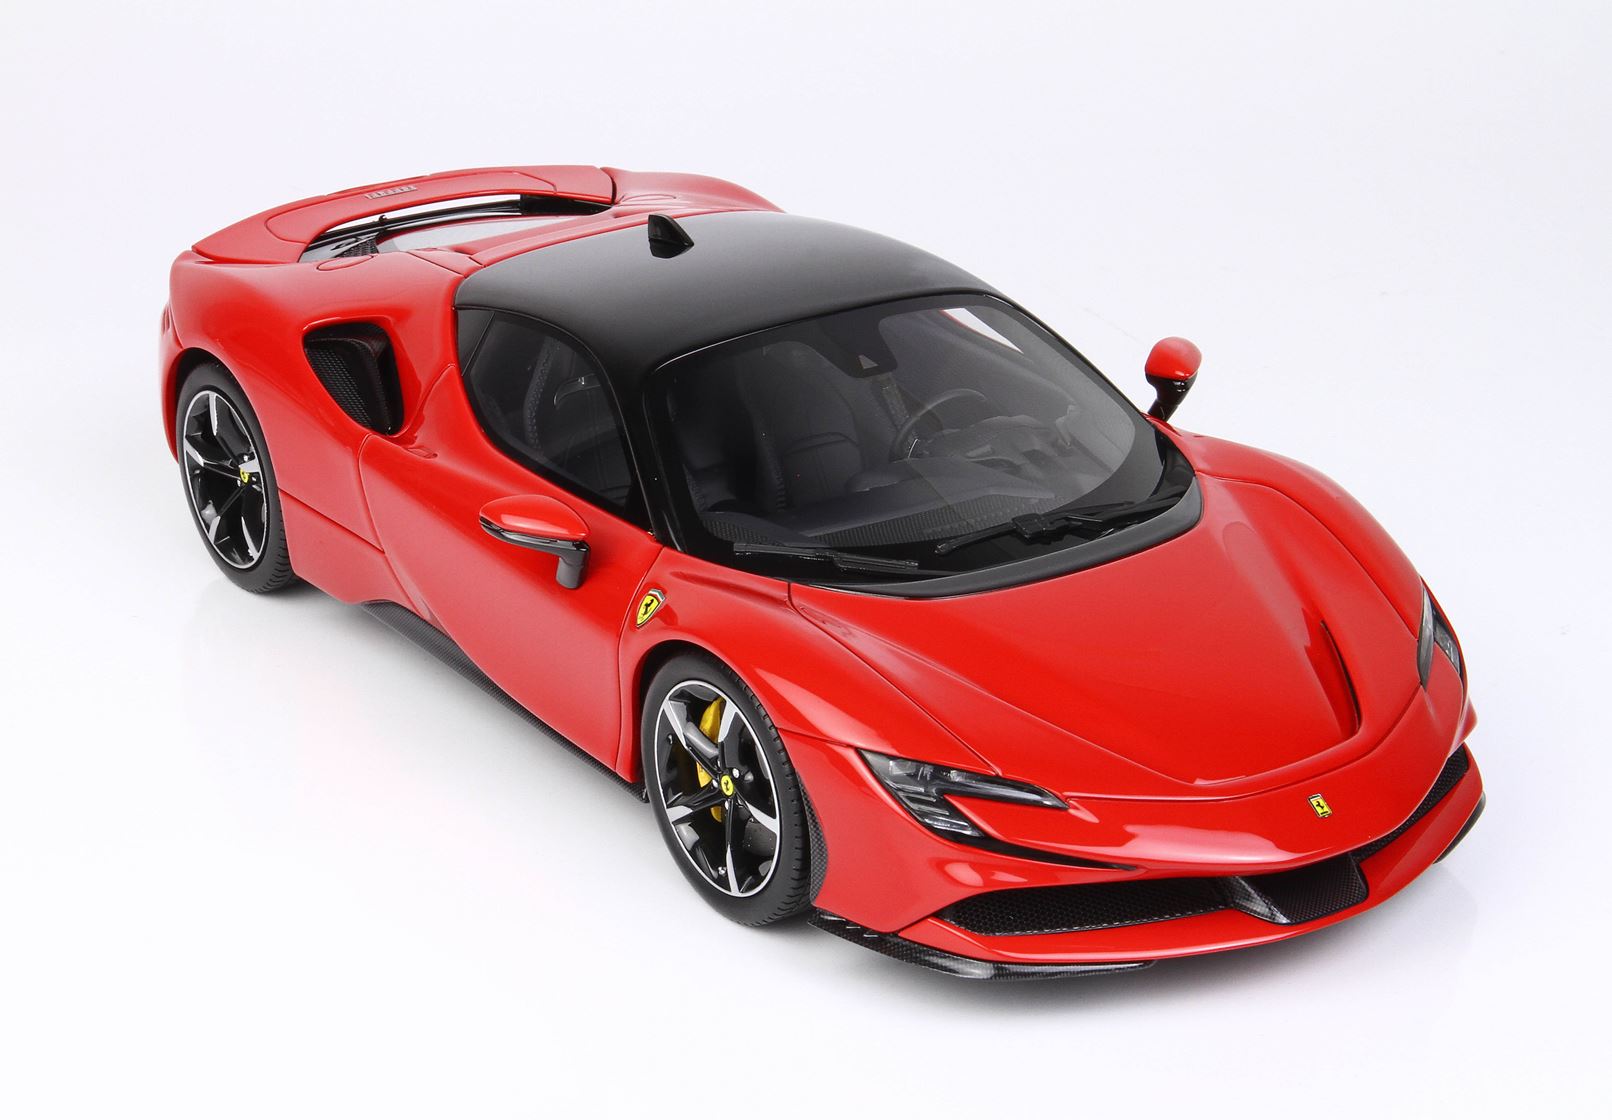 BBR Ferrari SF90 1:18 scale